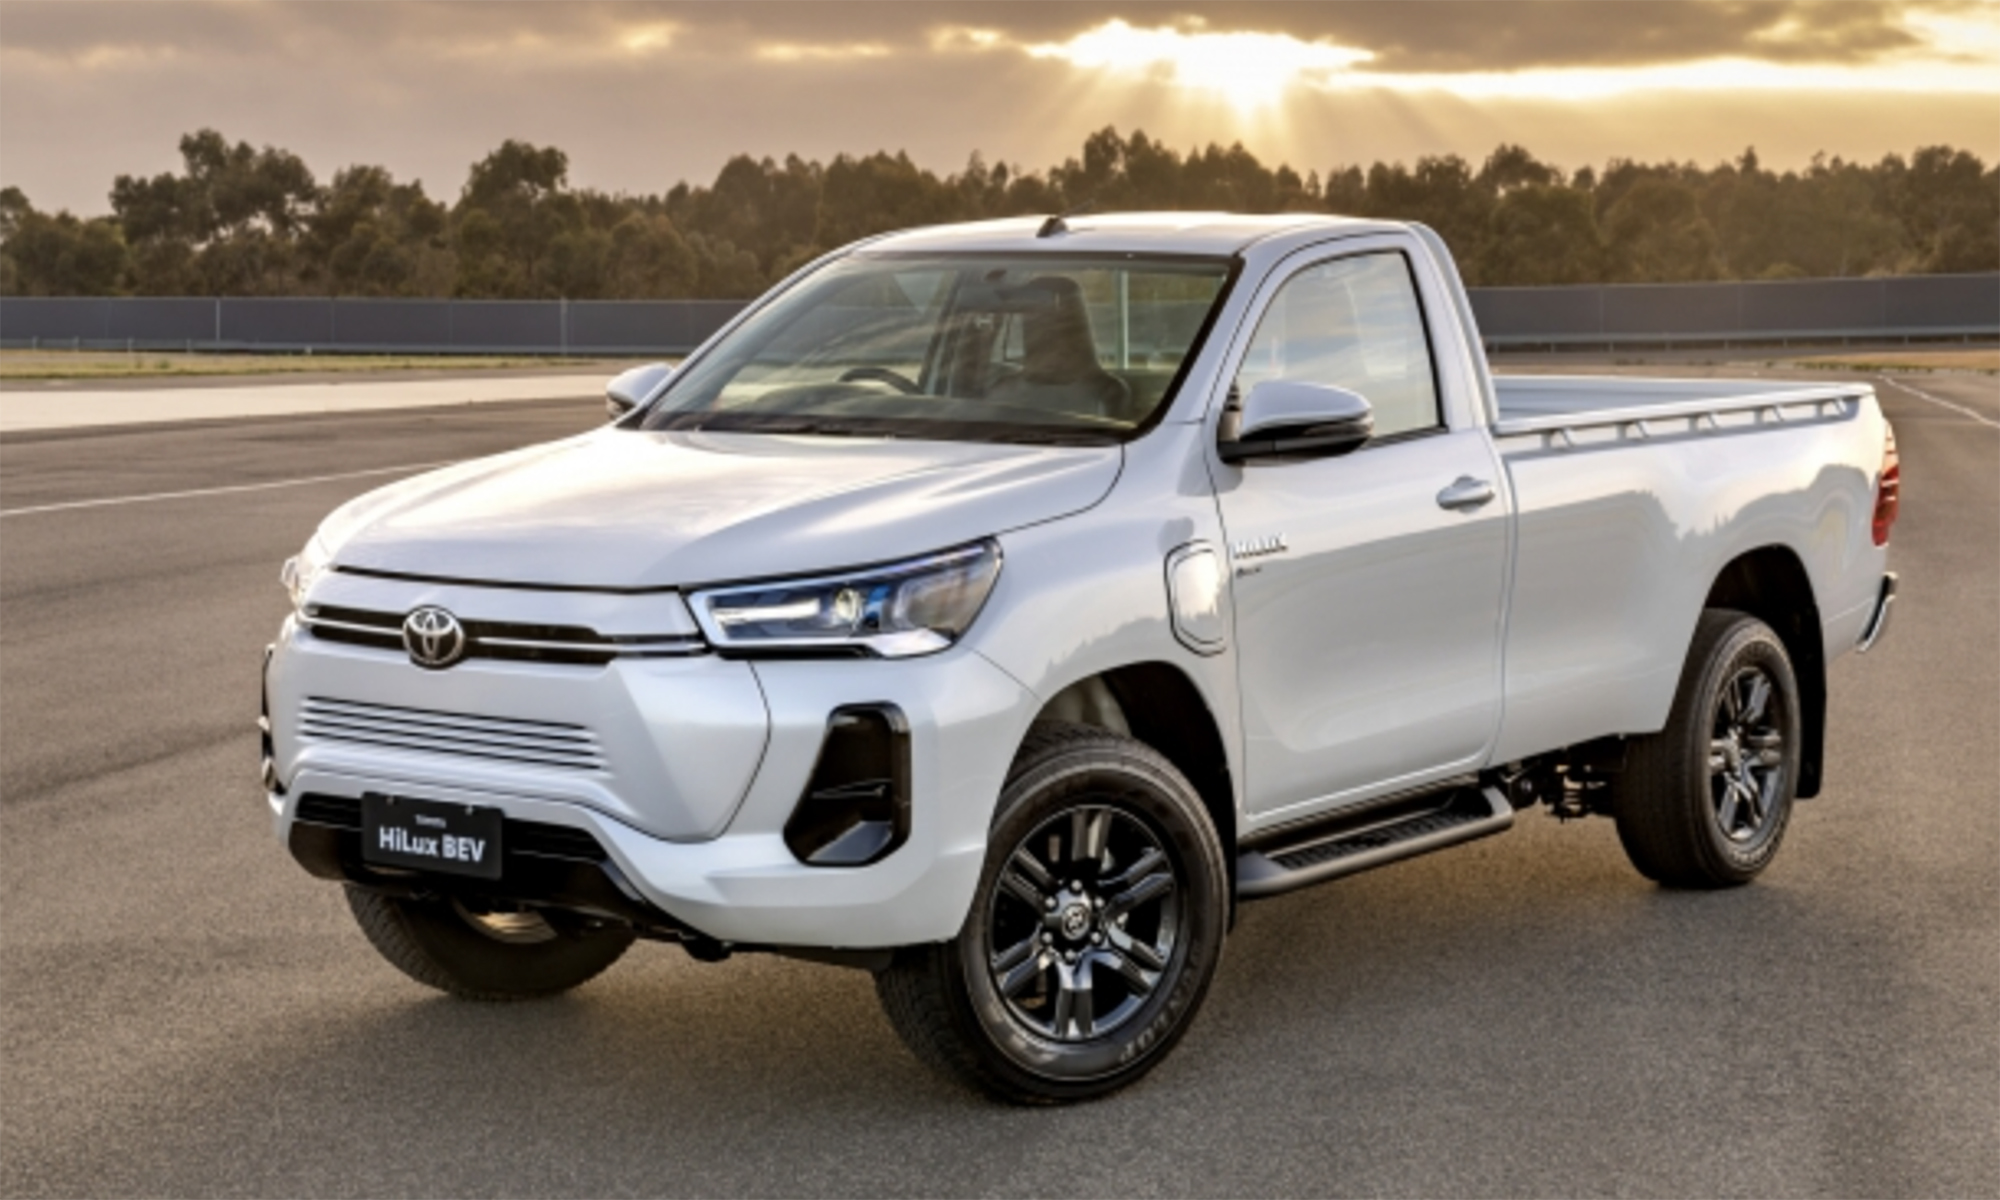 Toyota ya está desarrollando una Hilux eléctrica, aunque no llegará pronto.